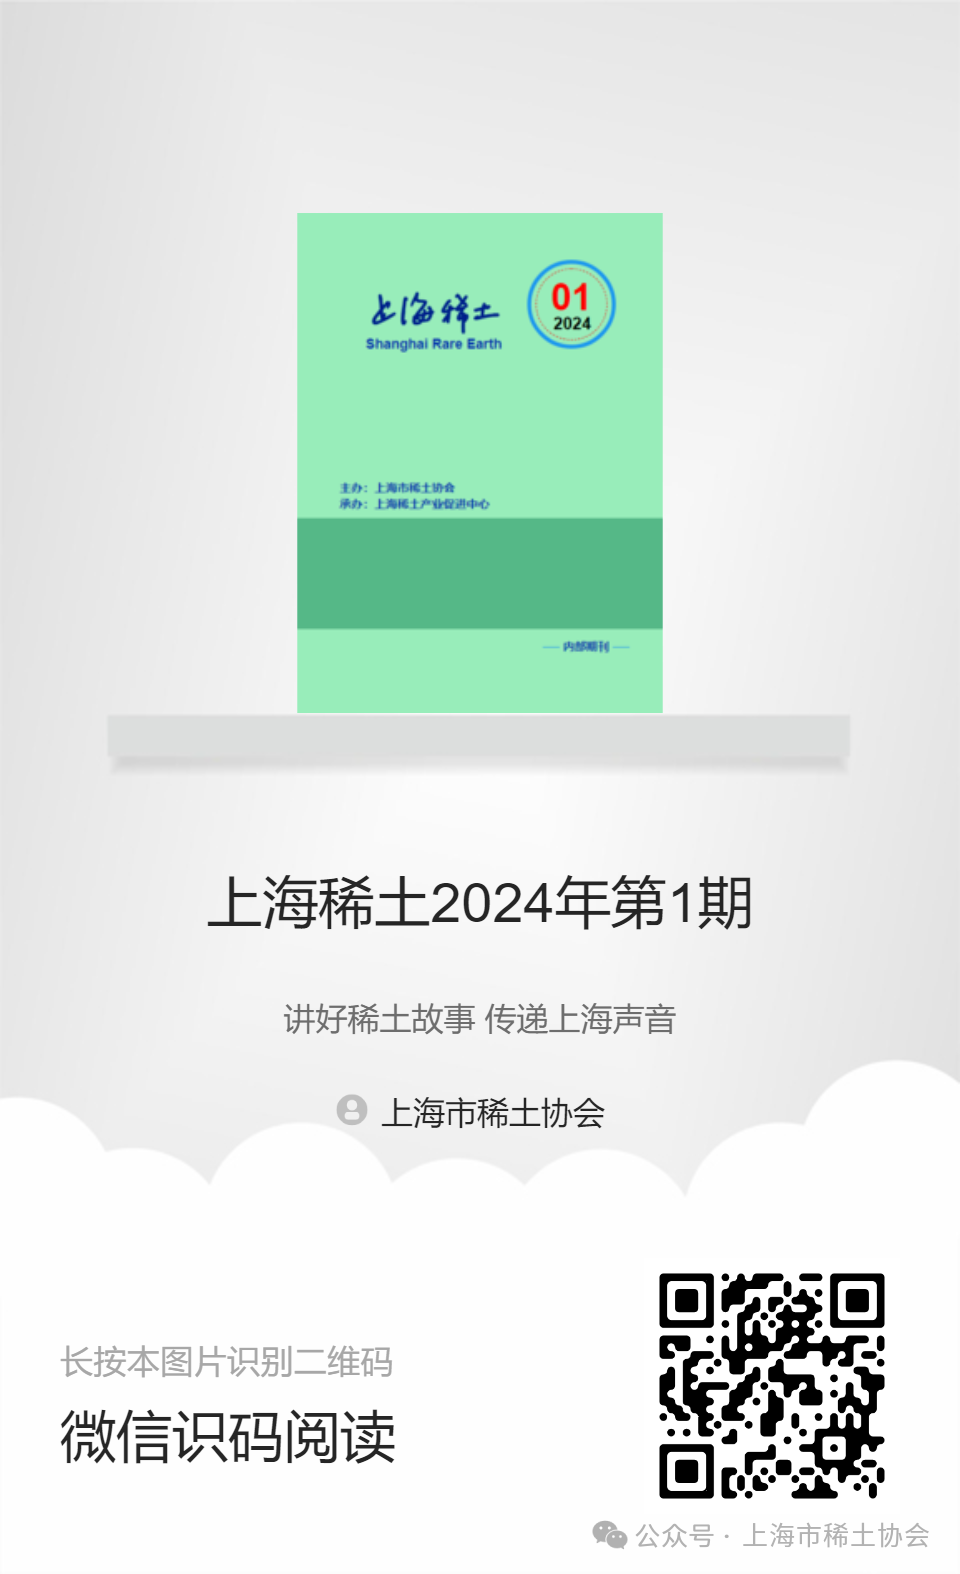 《上海稀土》—電子期刊2024年第1期上線